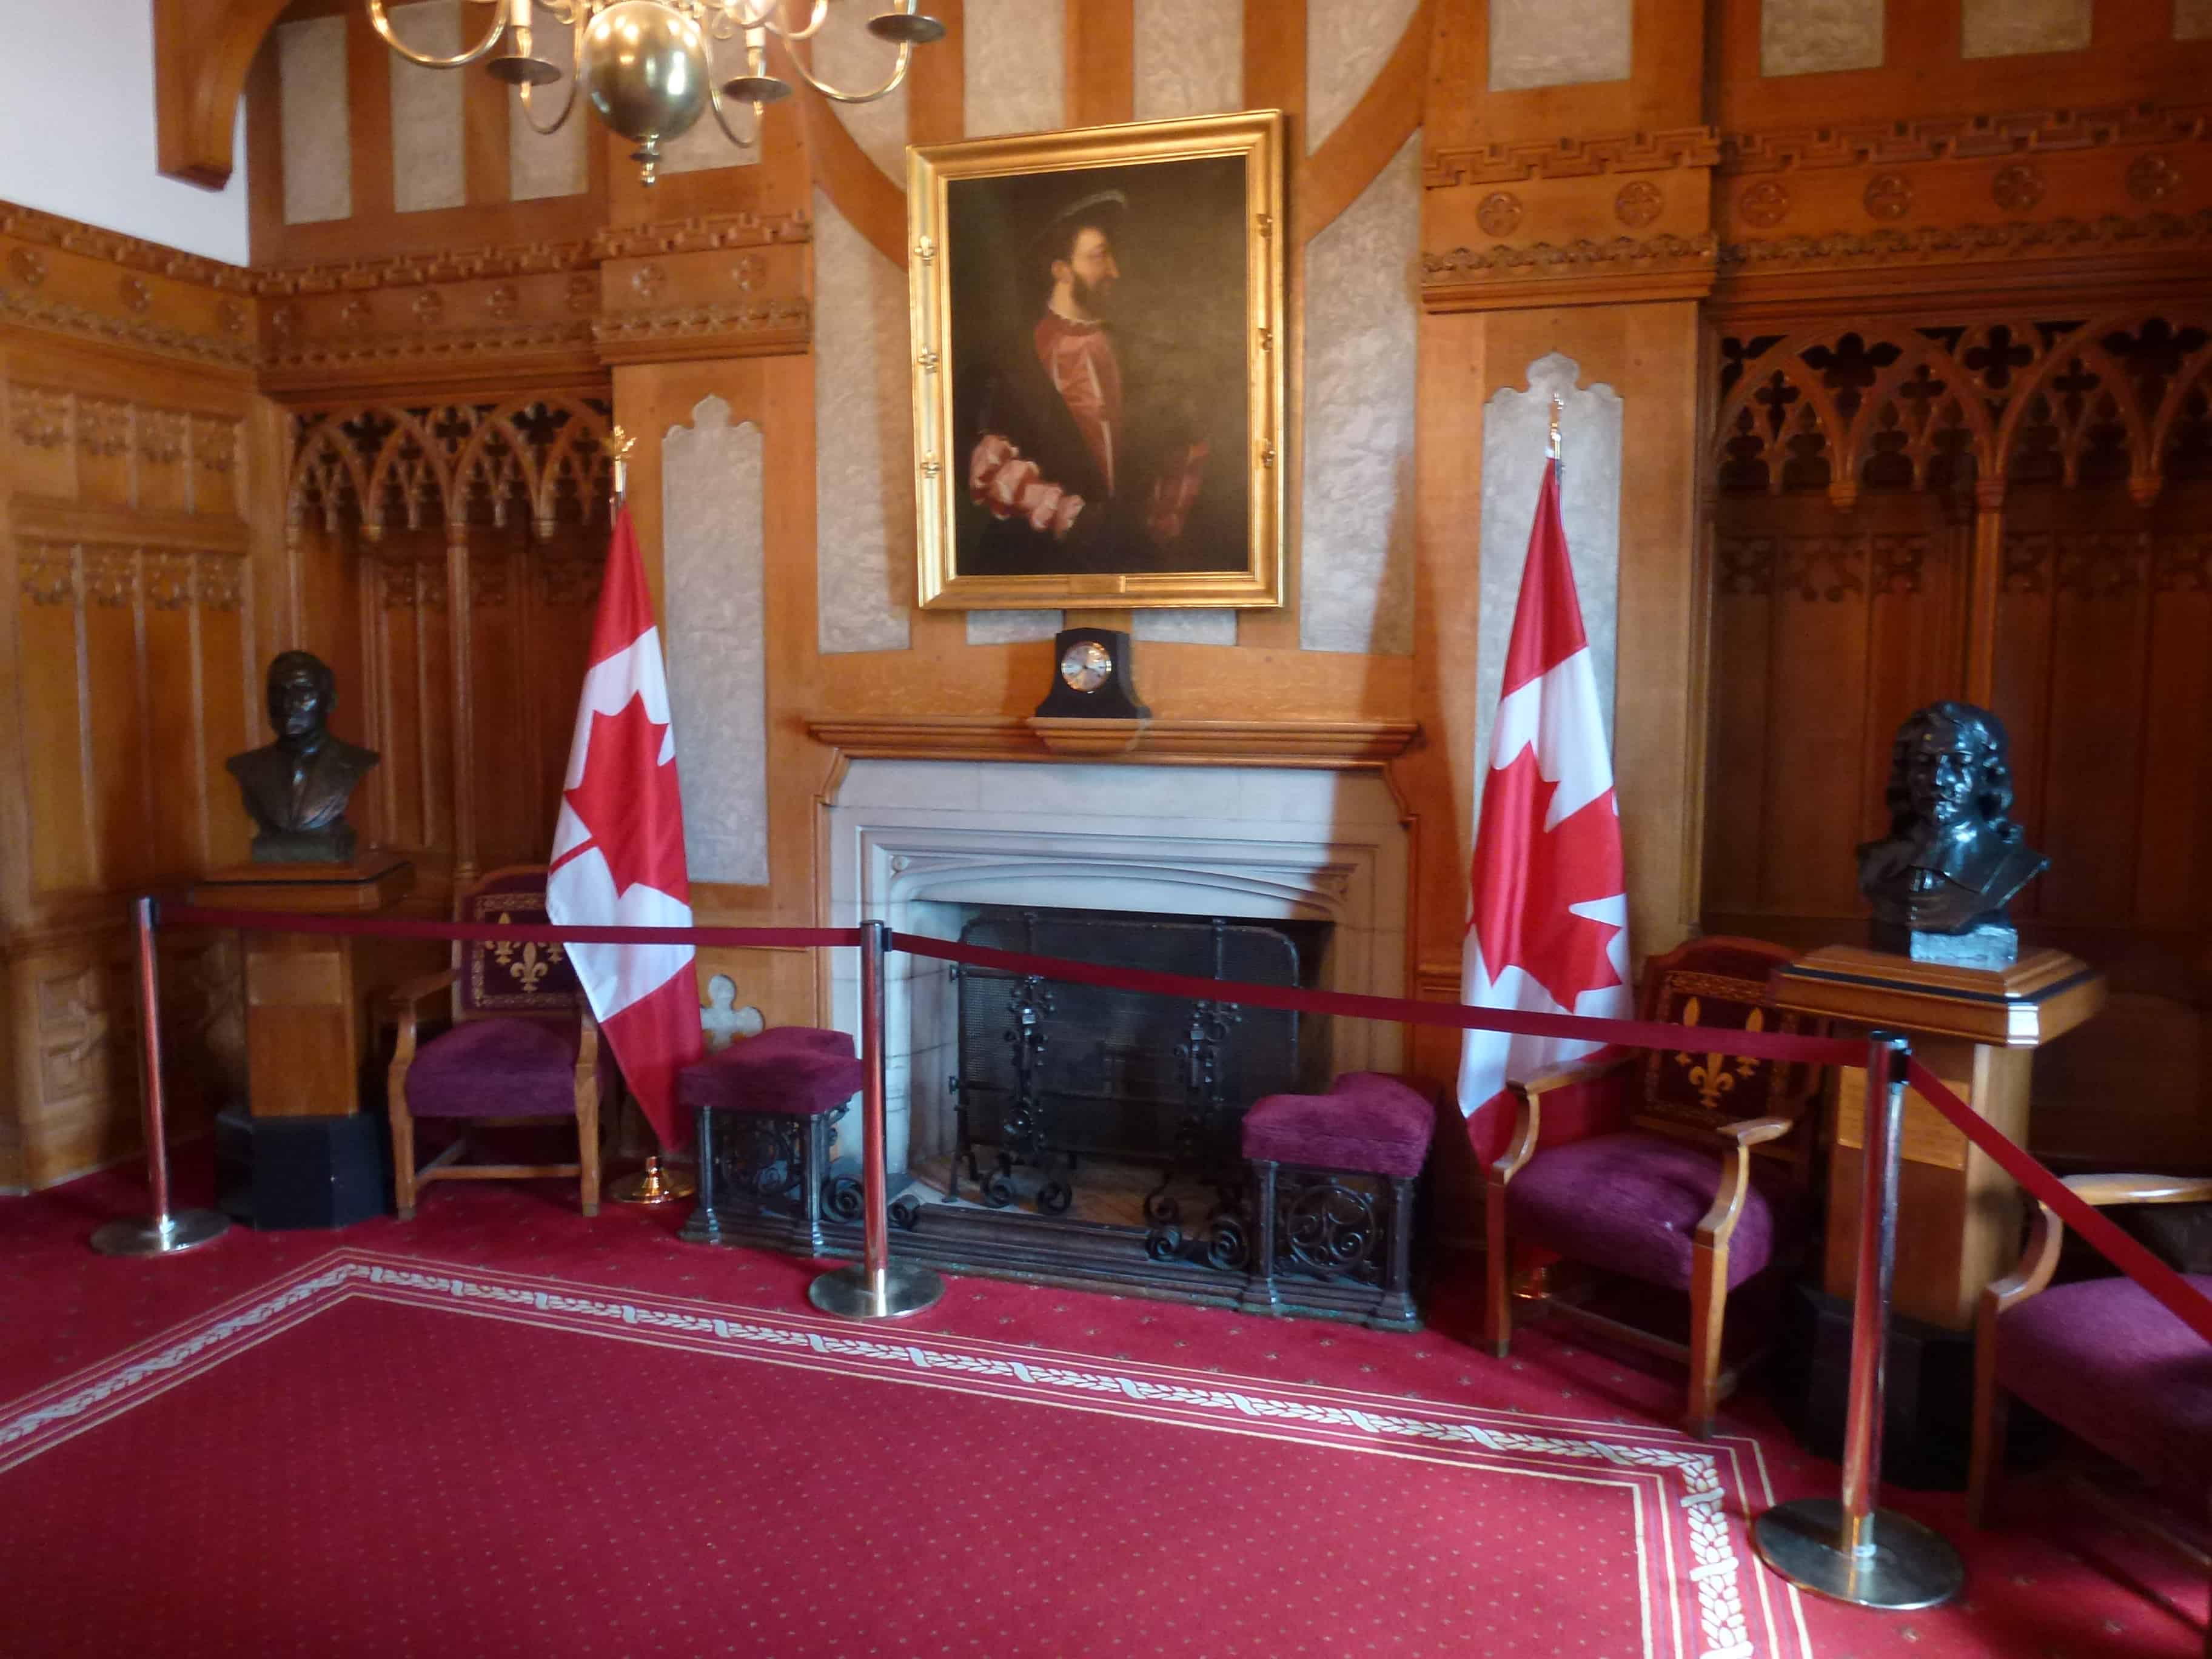 Salon de la Francophonie at Parliament Centre Block in Ottawa, Ontario Canada